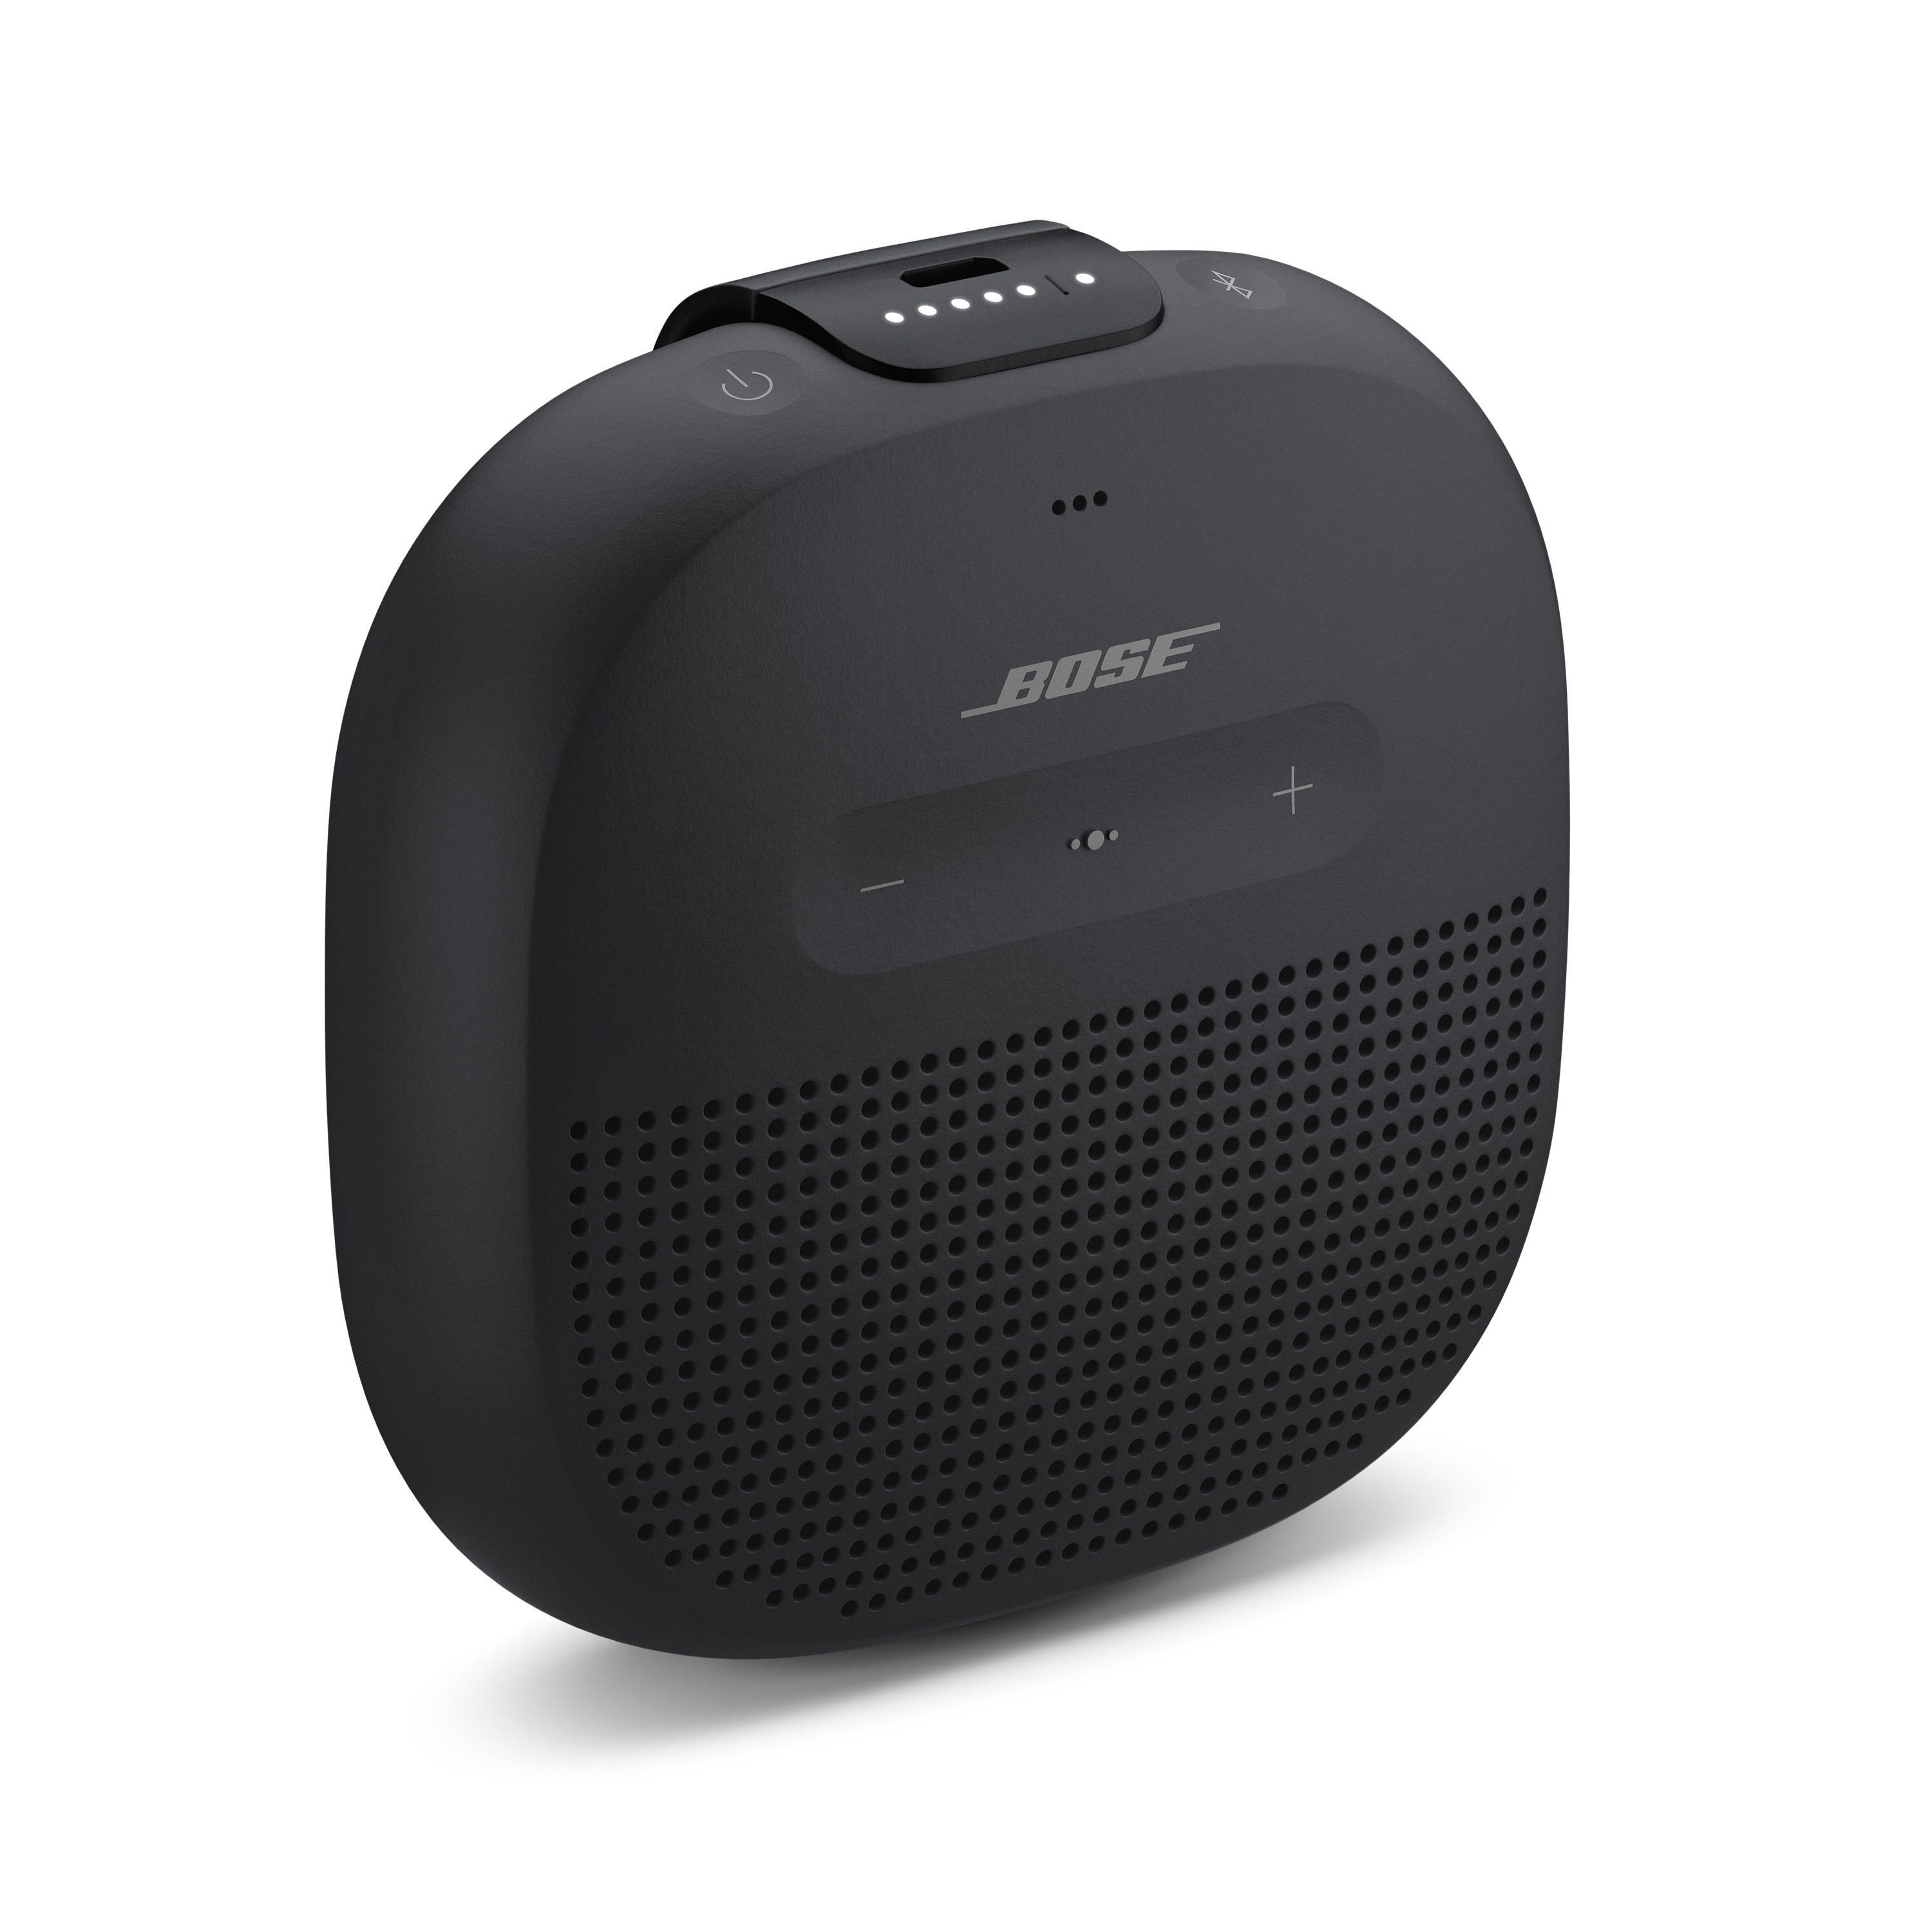 Bose soundlink portable bluetooth speaker